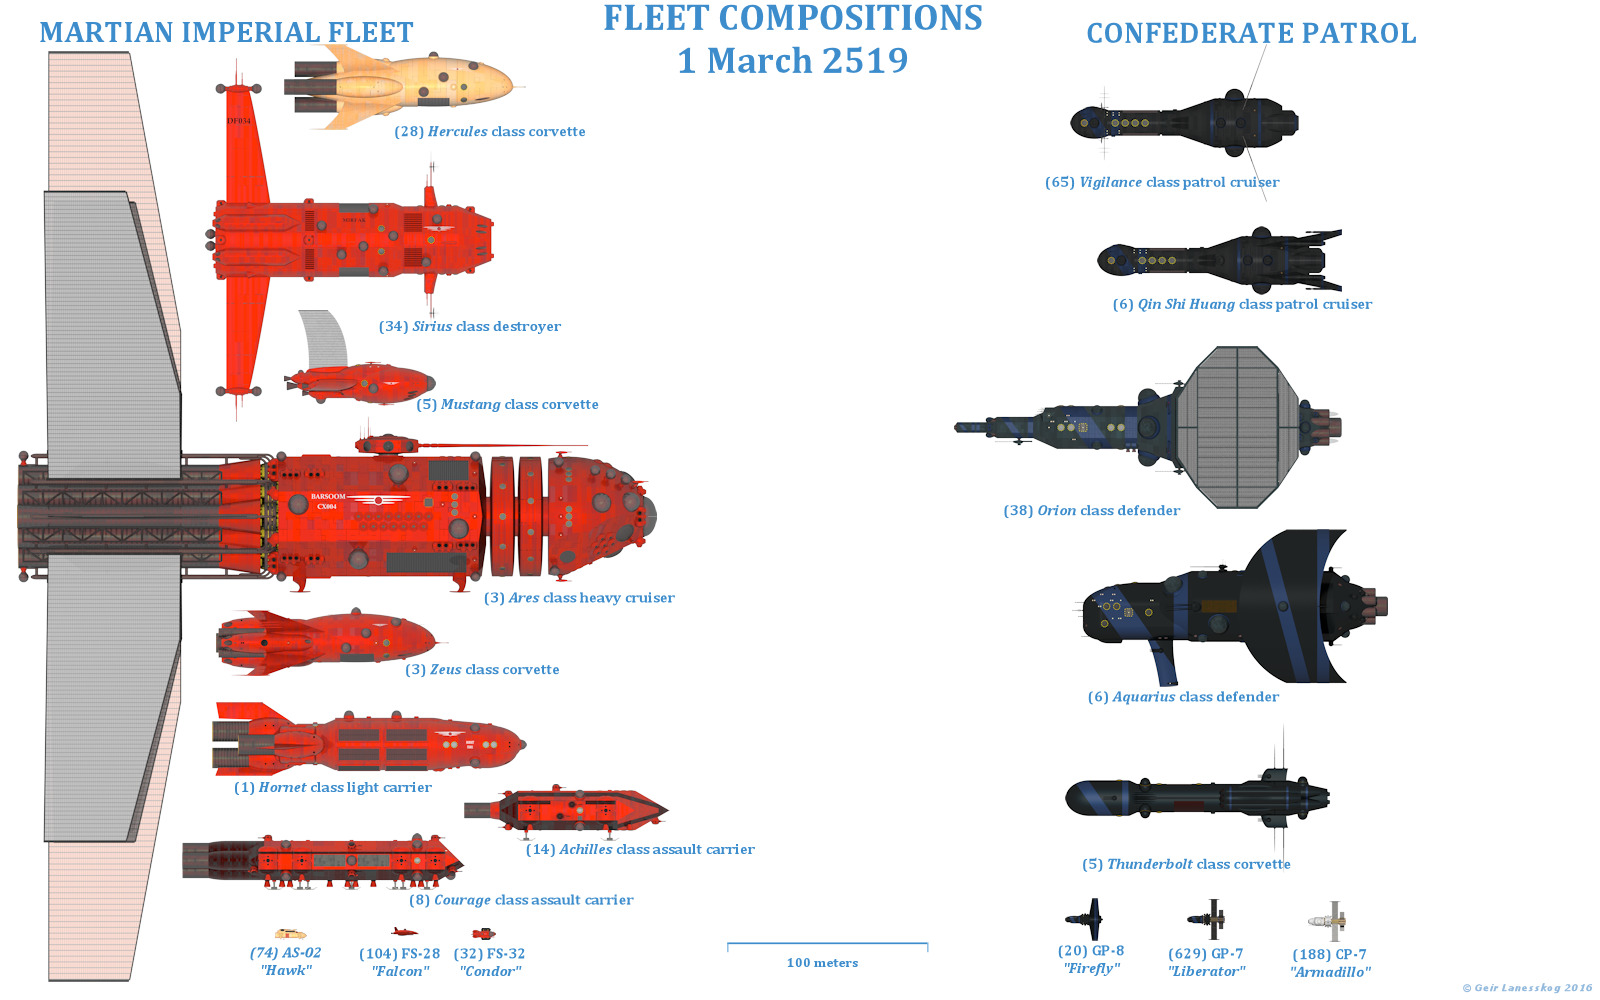 Fleet Composition Sheet